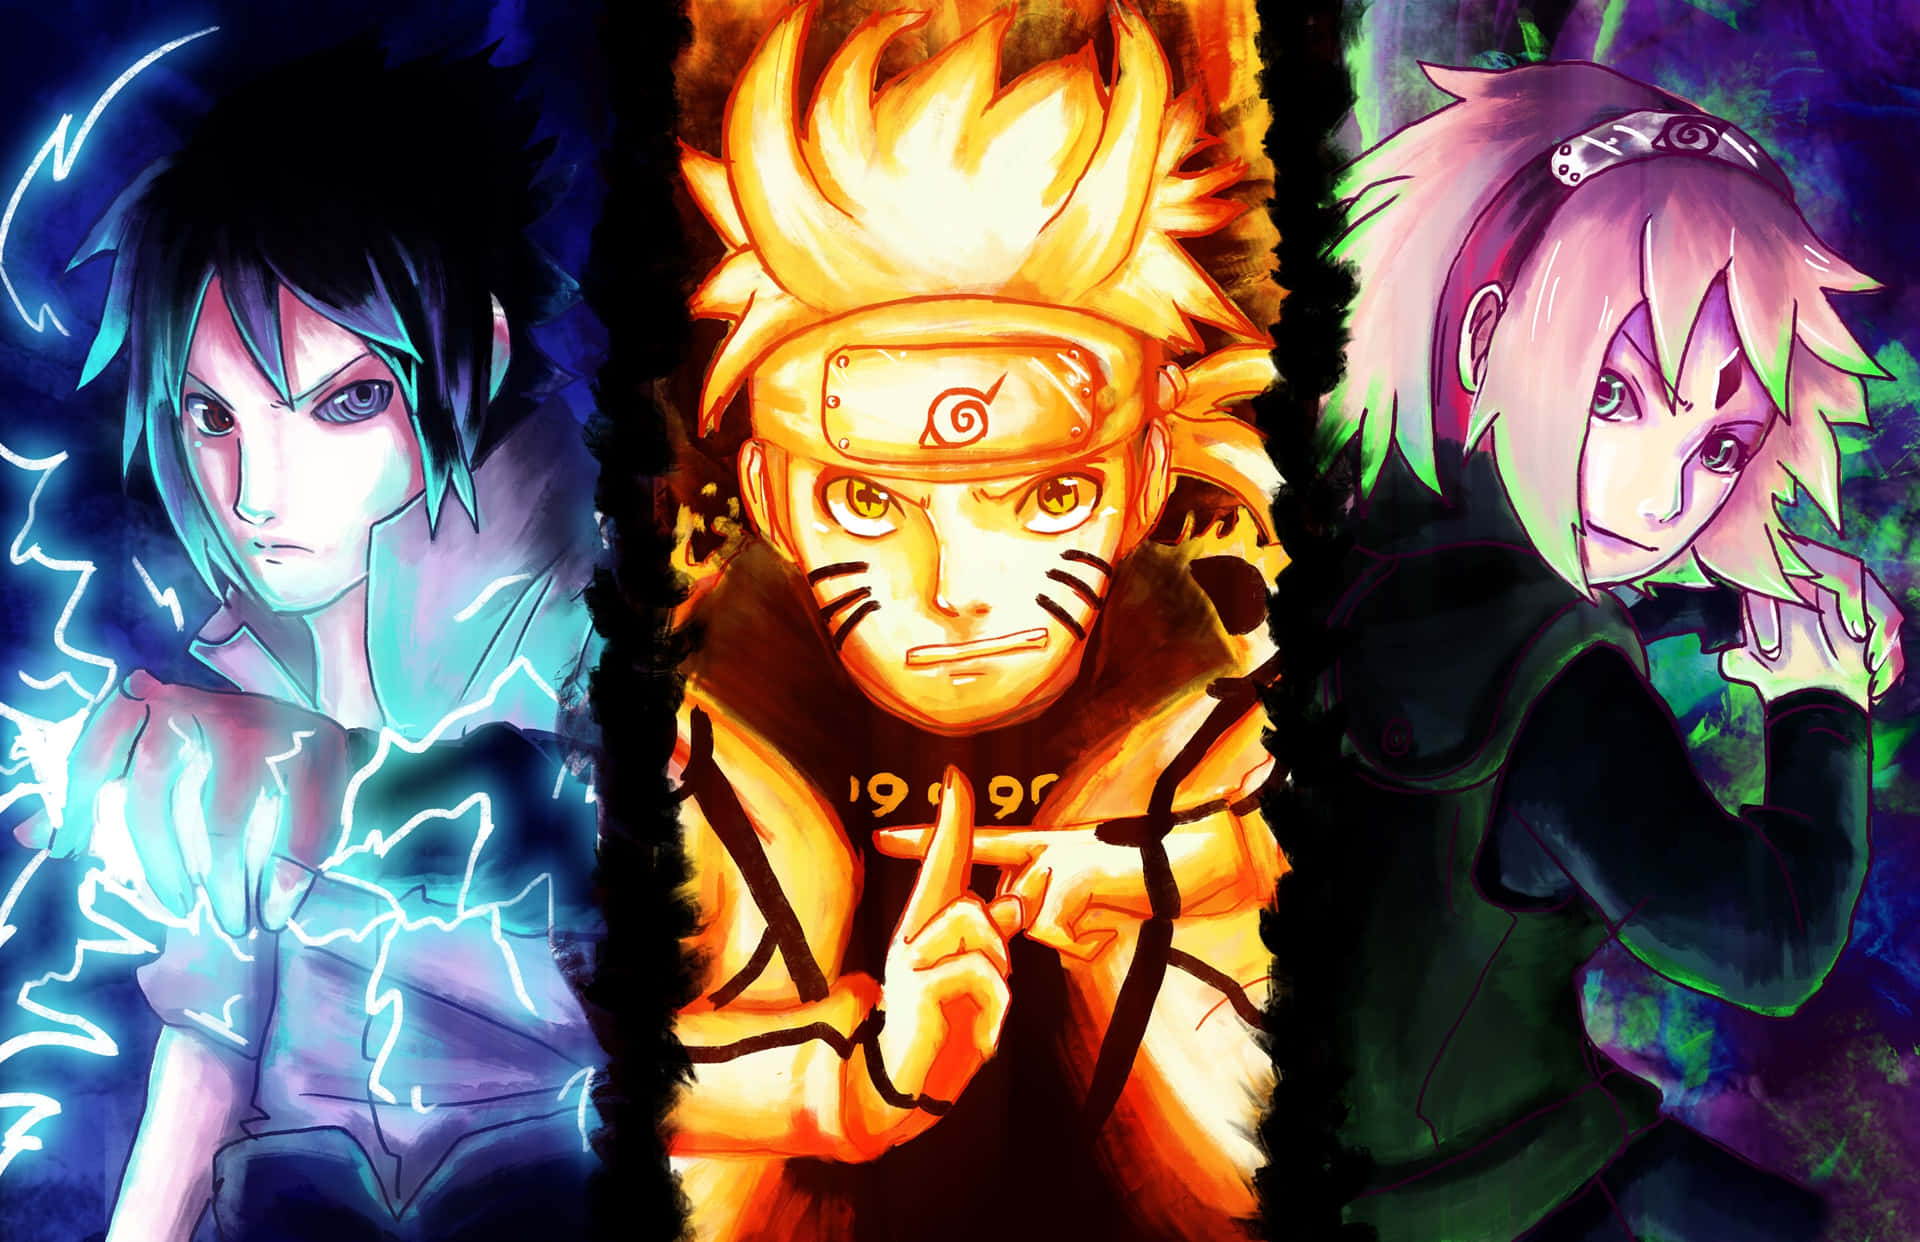 Team 7 Naruto Wallpaper là bộ sưu tập hình nền đẹp mắt về đội 7 trong Naruto với chất lượng hình ảnh tuyệt vời và độ phân giải cao. Với những hình nền này, bạn sẽ thấy mình như đang sống trong thế giới của Naruto và được cùng những nhân vật yêu thích của mình phiêu lưu khắp nơi.